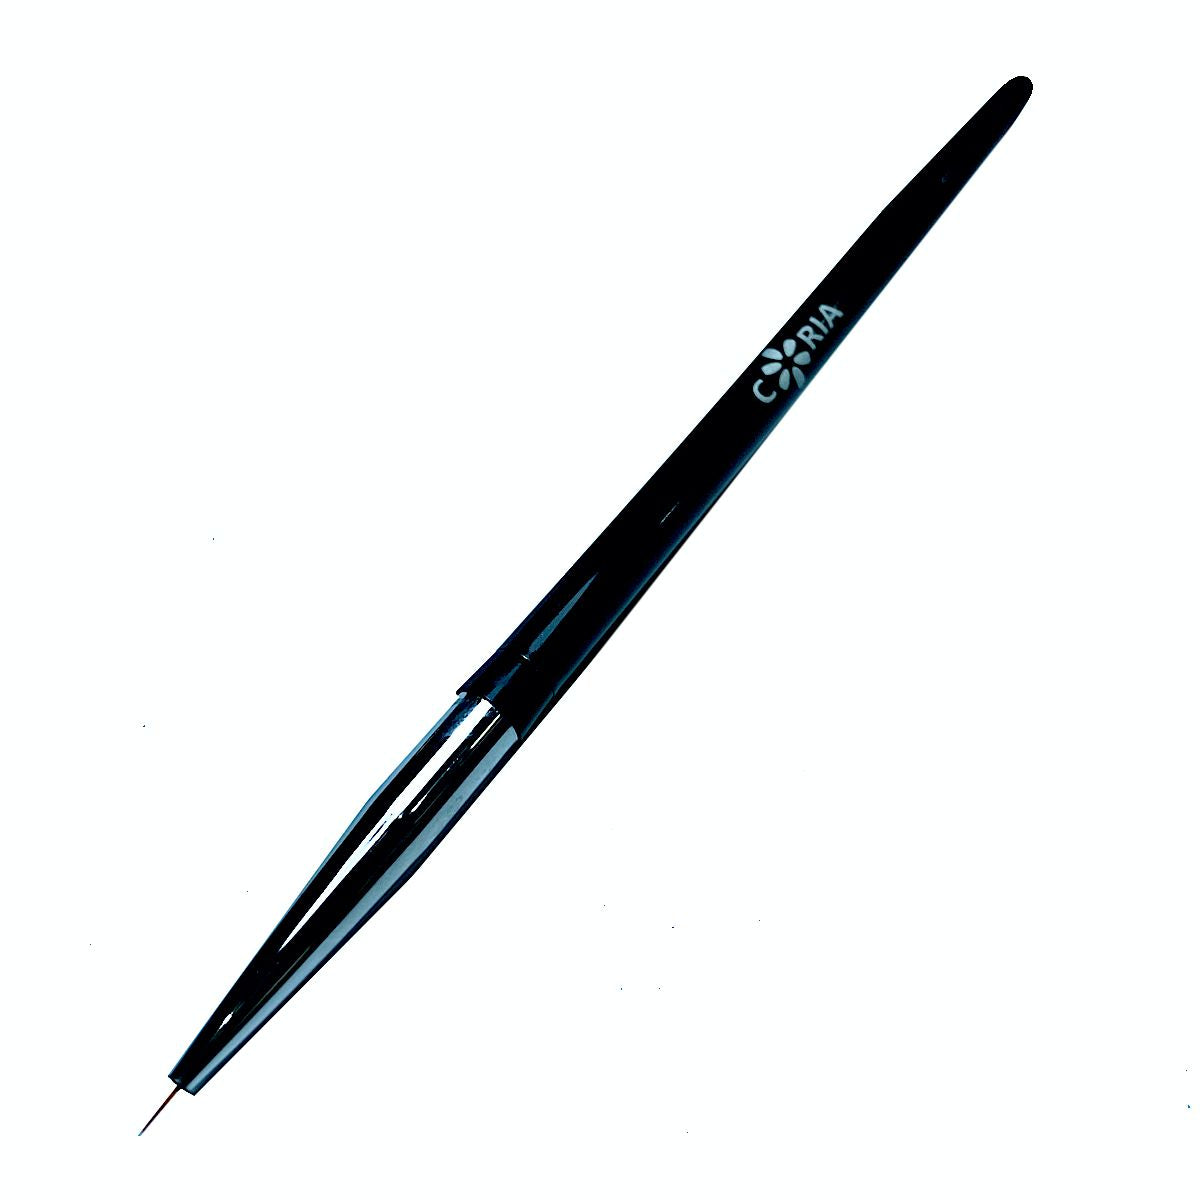 Pensula Pictura Coria Black Slime 4mm